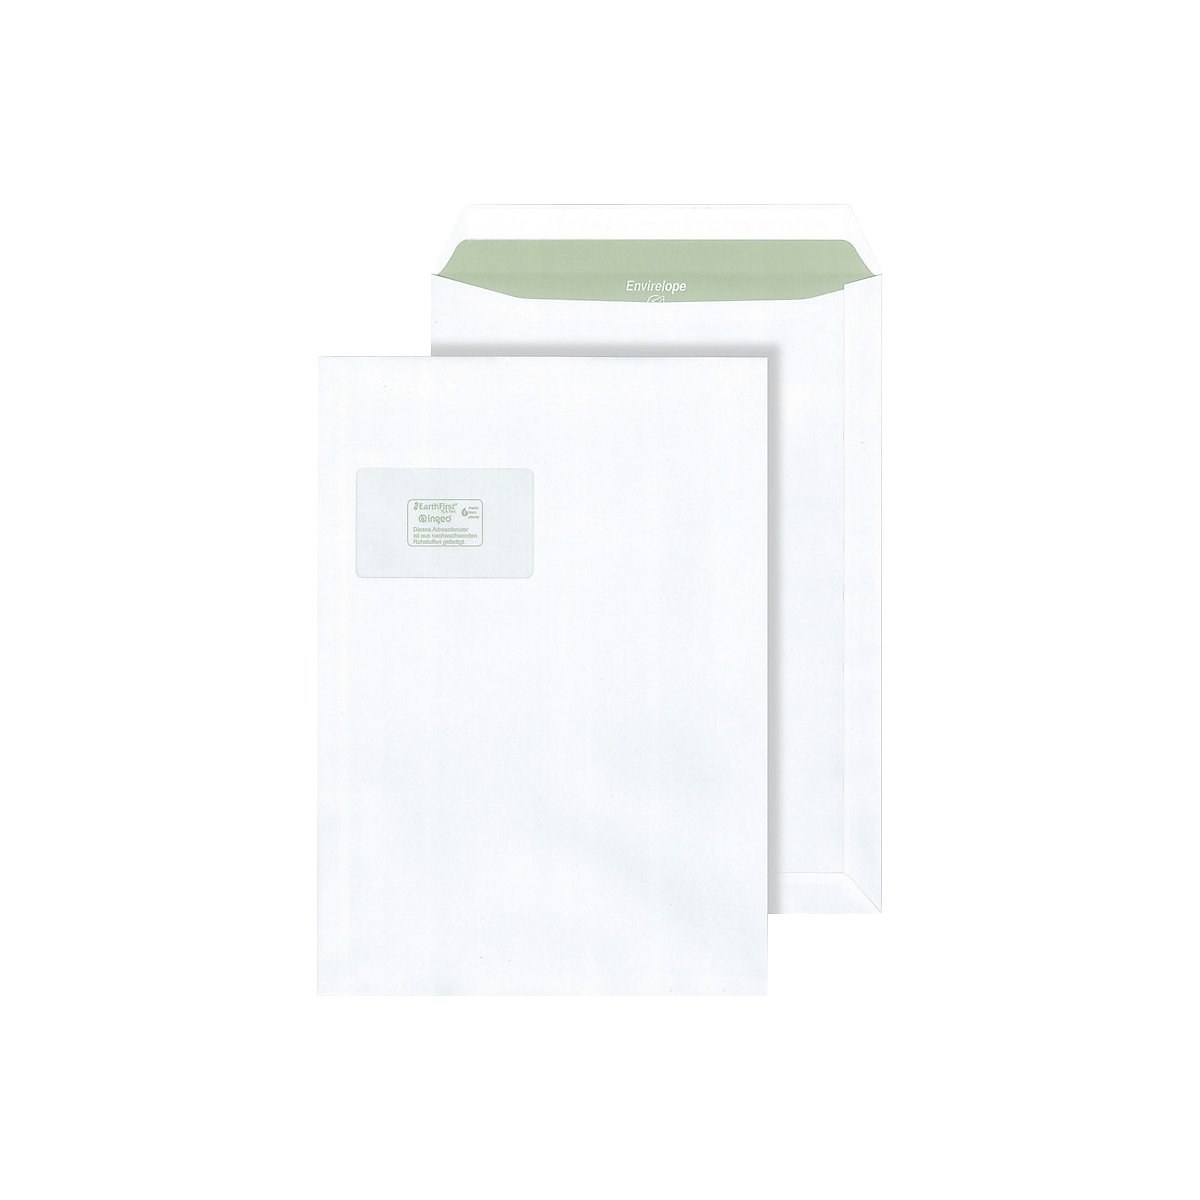 Briefumschläge Envirelope® terra, weiß, mit Fenster, Format C4, VE 250 Stk, ab 5 VE-1